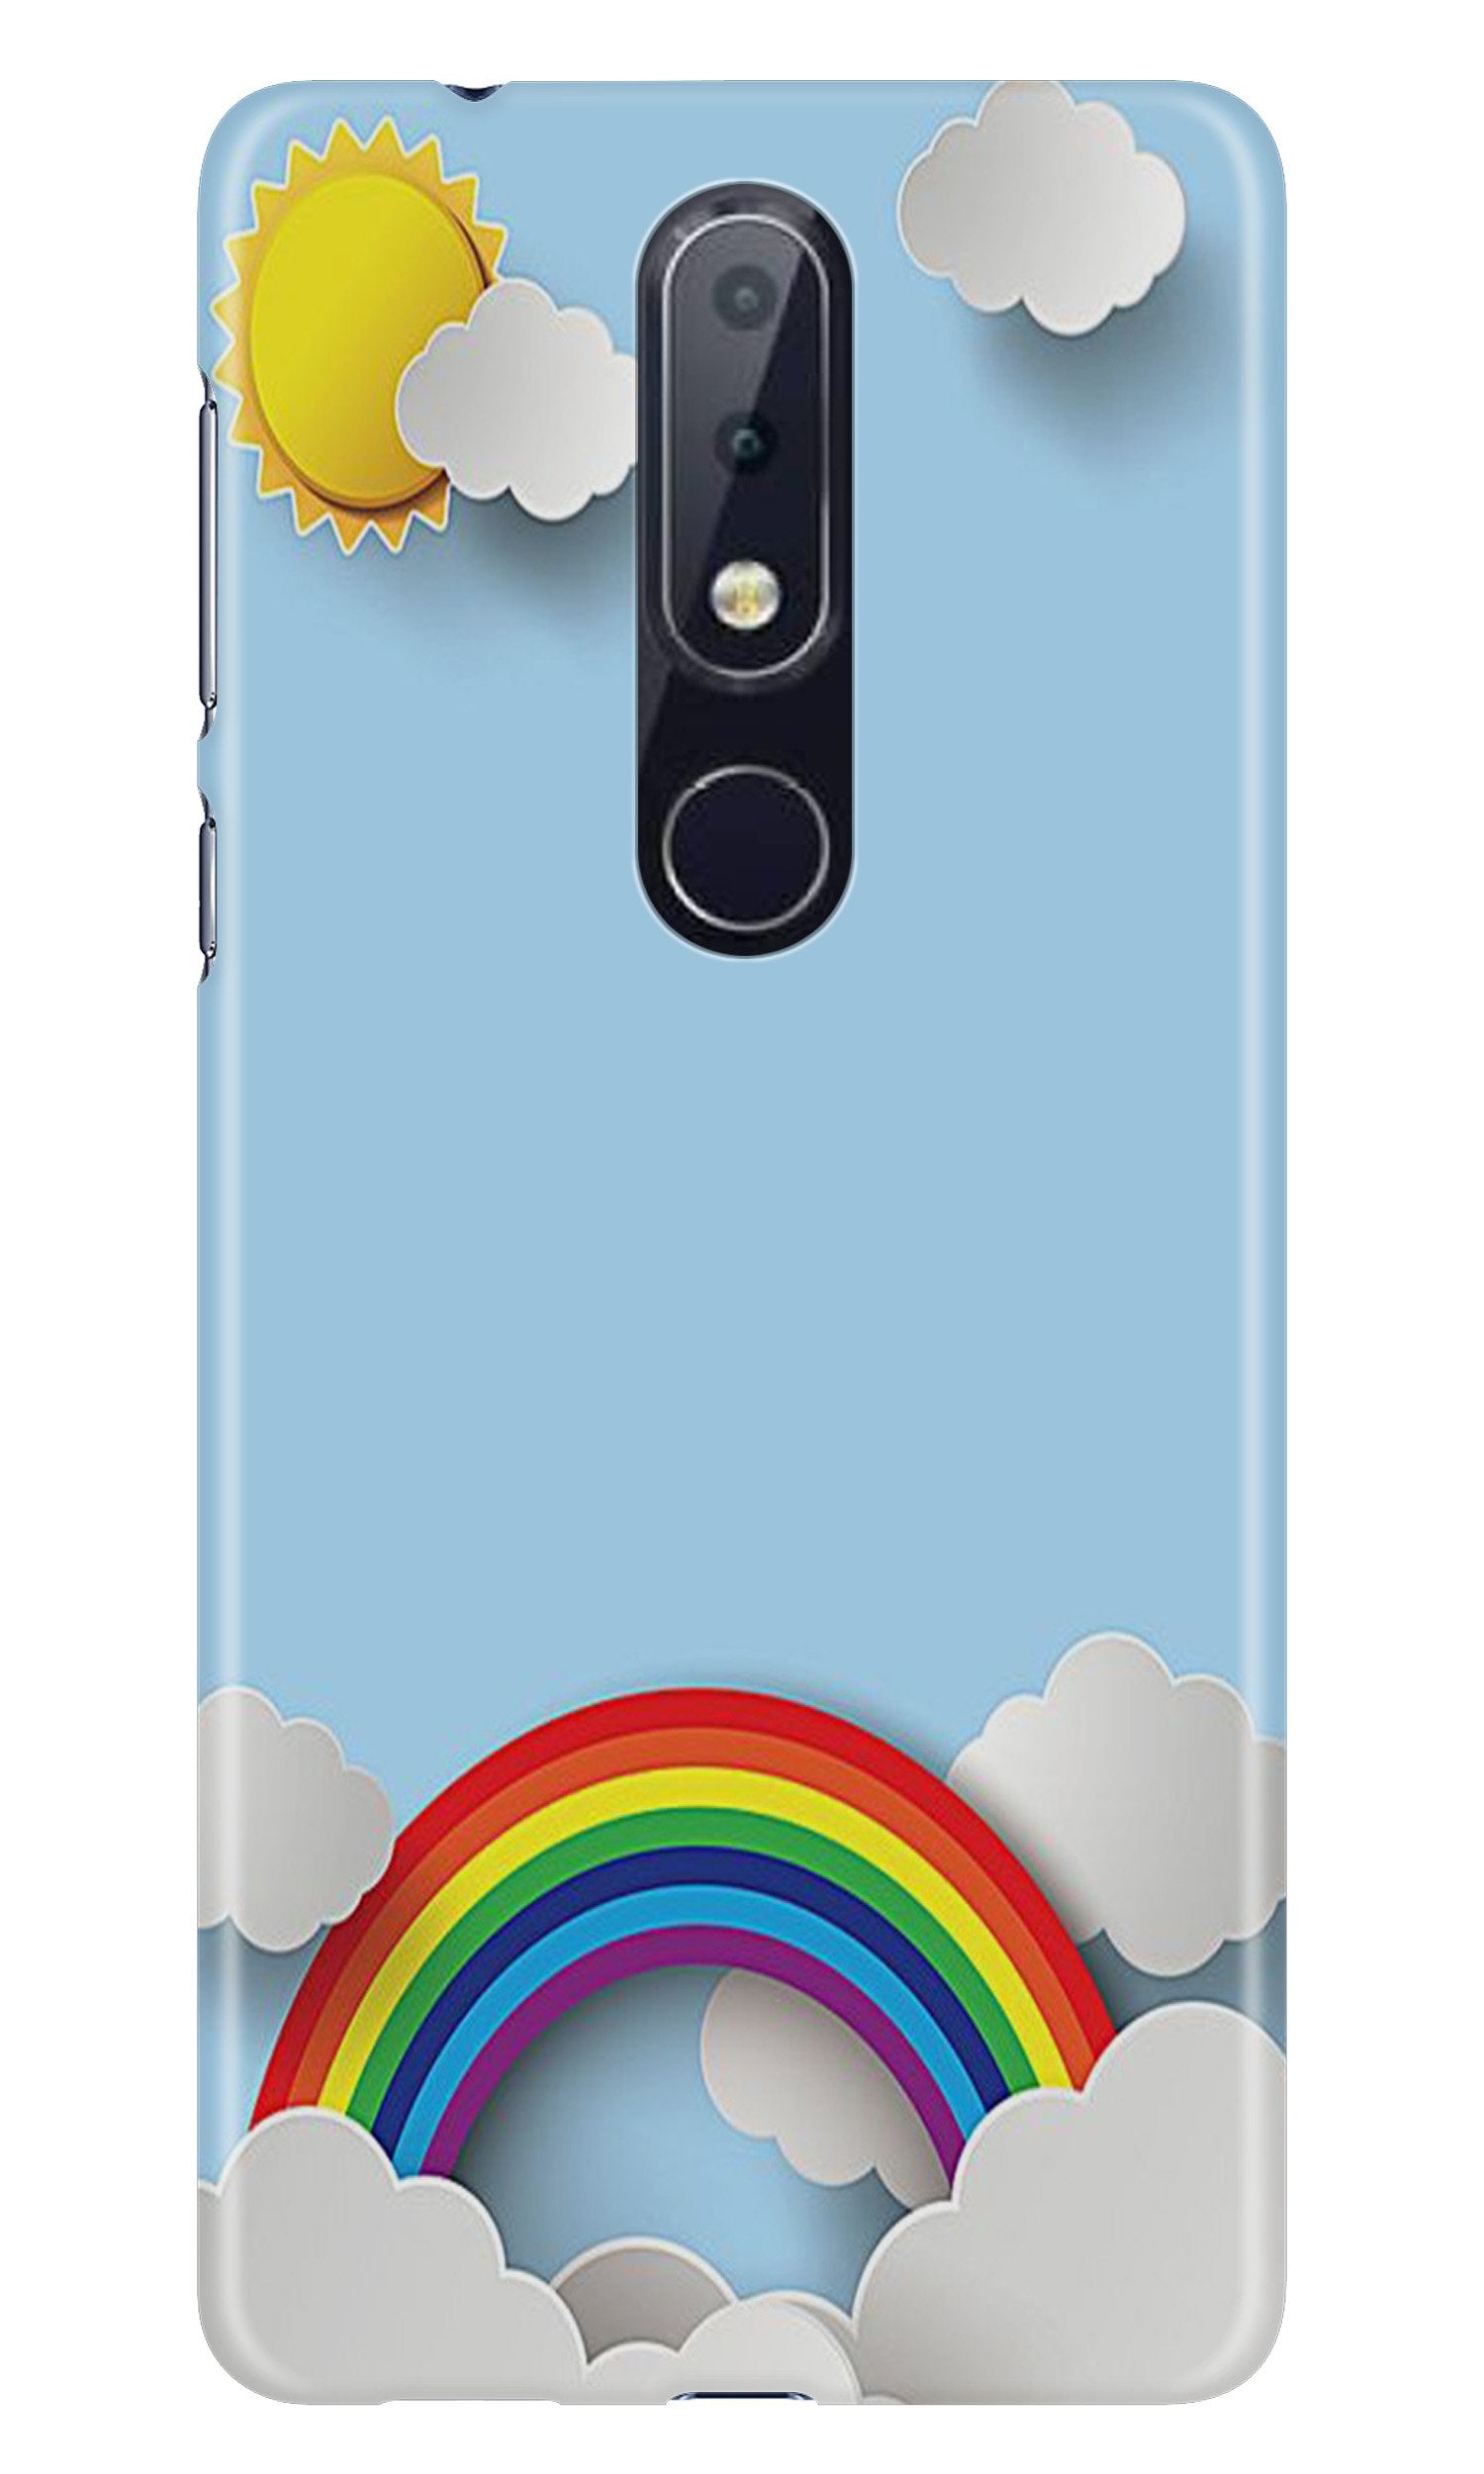 Rainbow Case for Nokia 4.2 (Design No. 225)